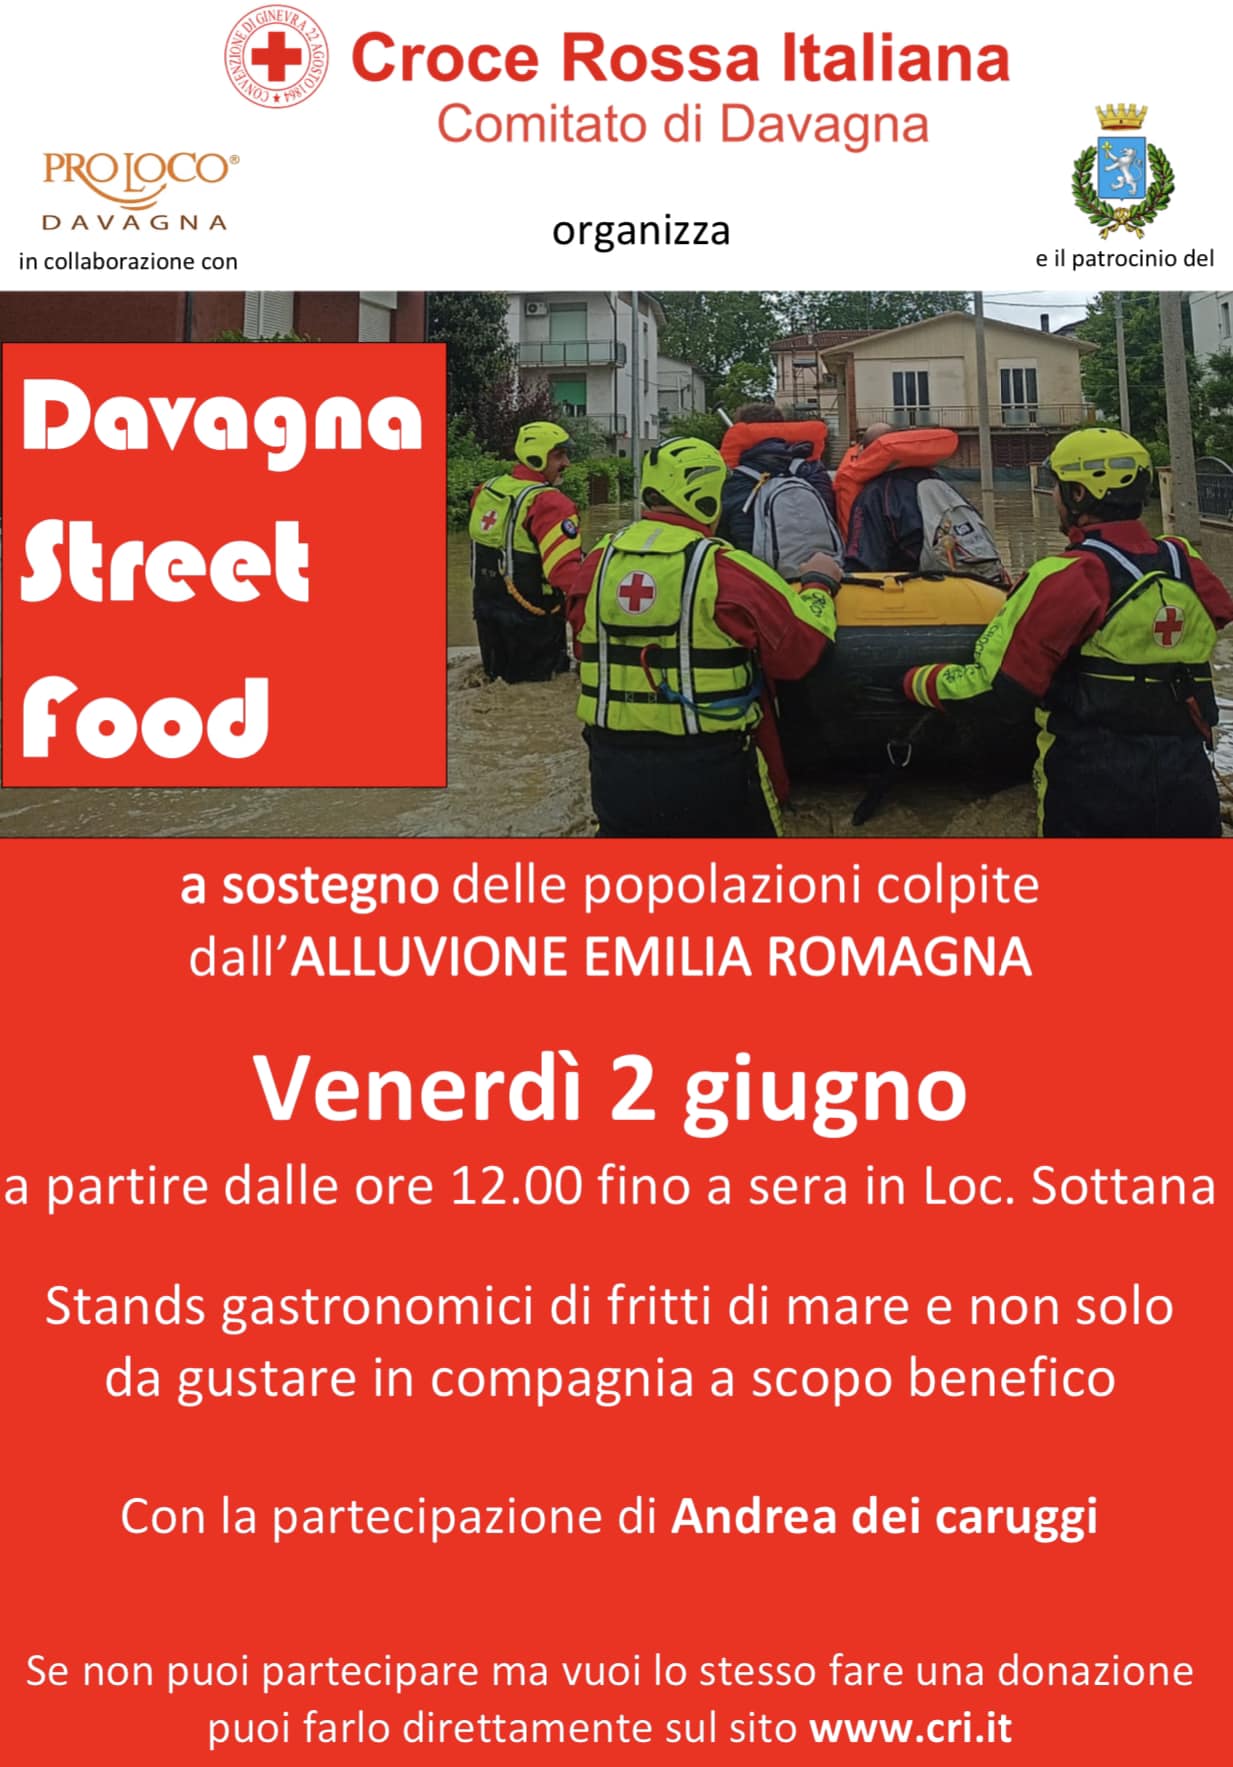 L'evento, organizzato dalla Croce Rossa Italiana - Comitato di Davagna, in collaborazione con la Pro Loco Davagna e con il patrocinio del Comune di Davagna, è a scopo benefico per portare sostegno alle popolazioni colpite dall'alluvione dell'Emilia Romagna.